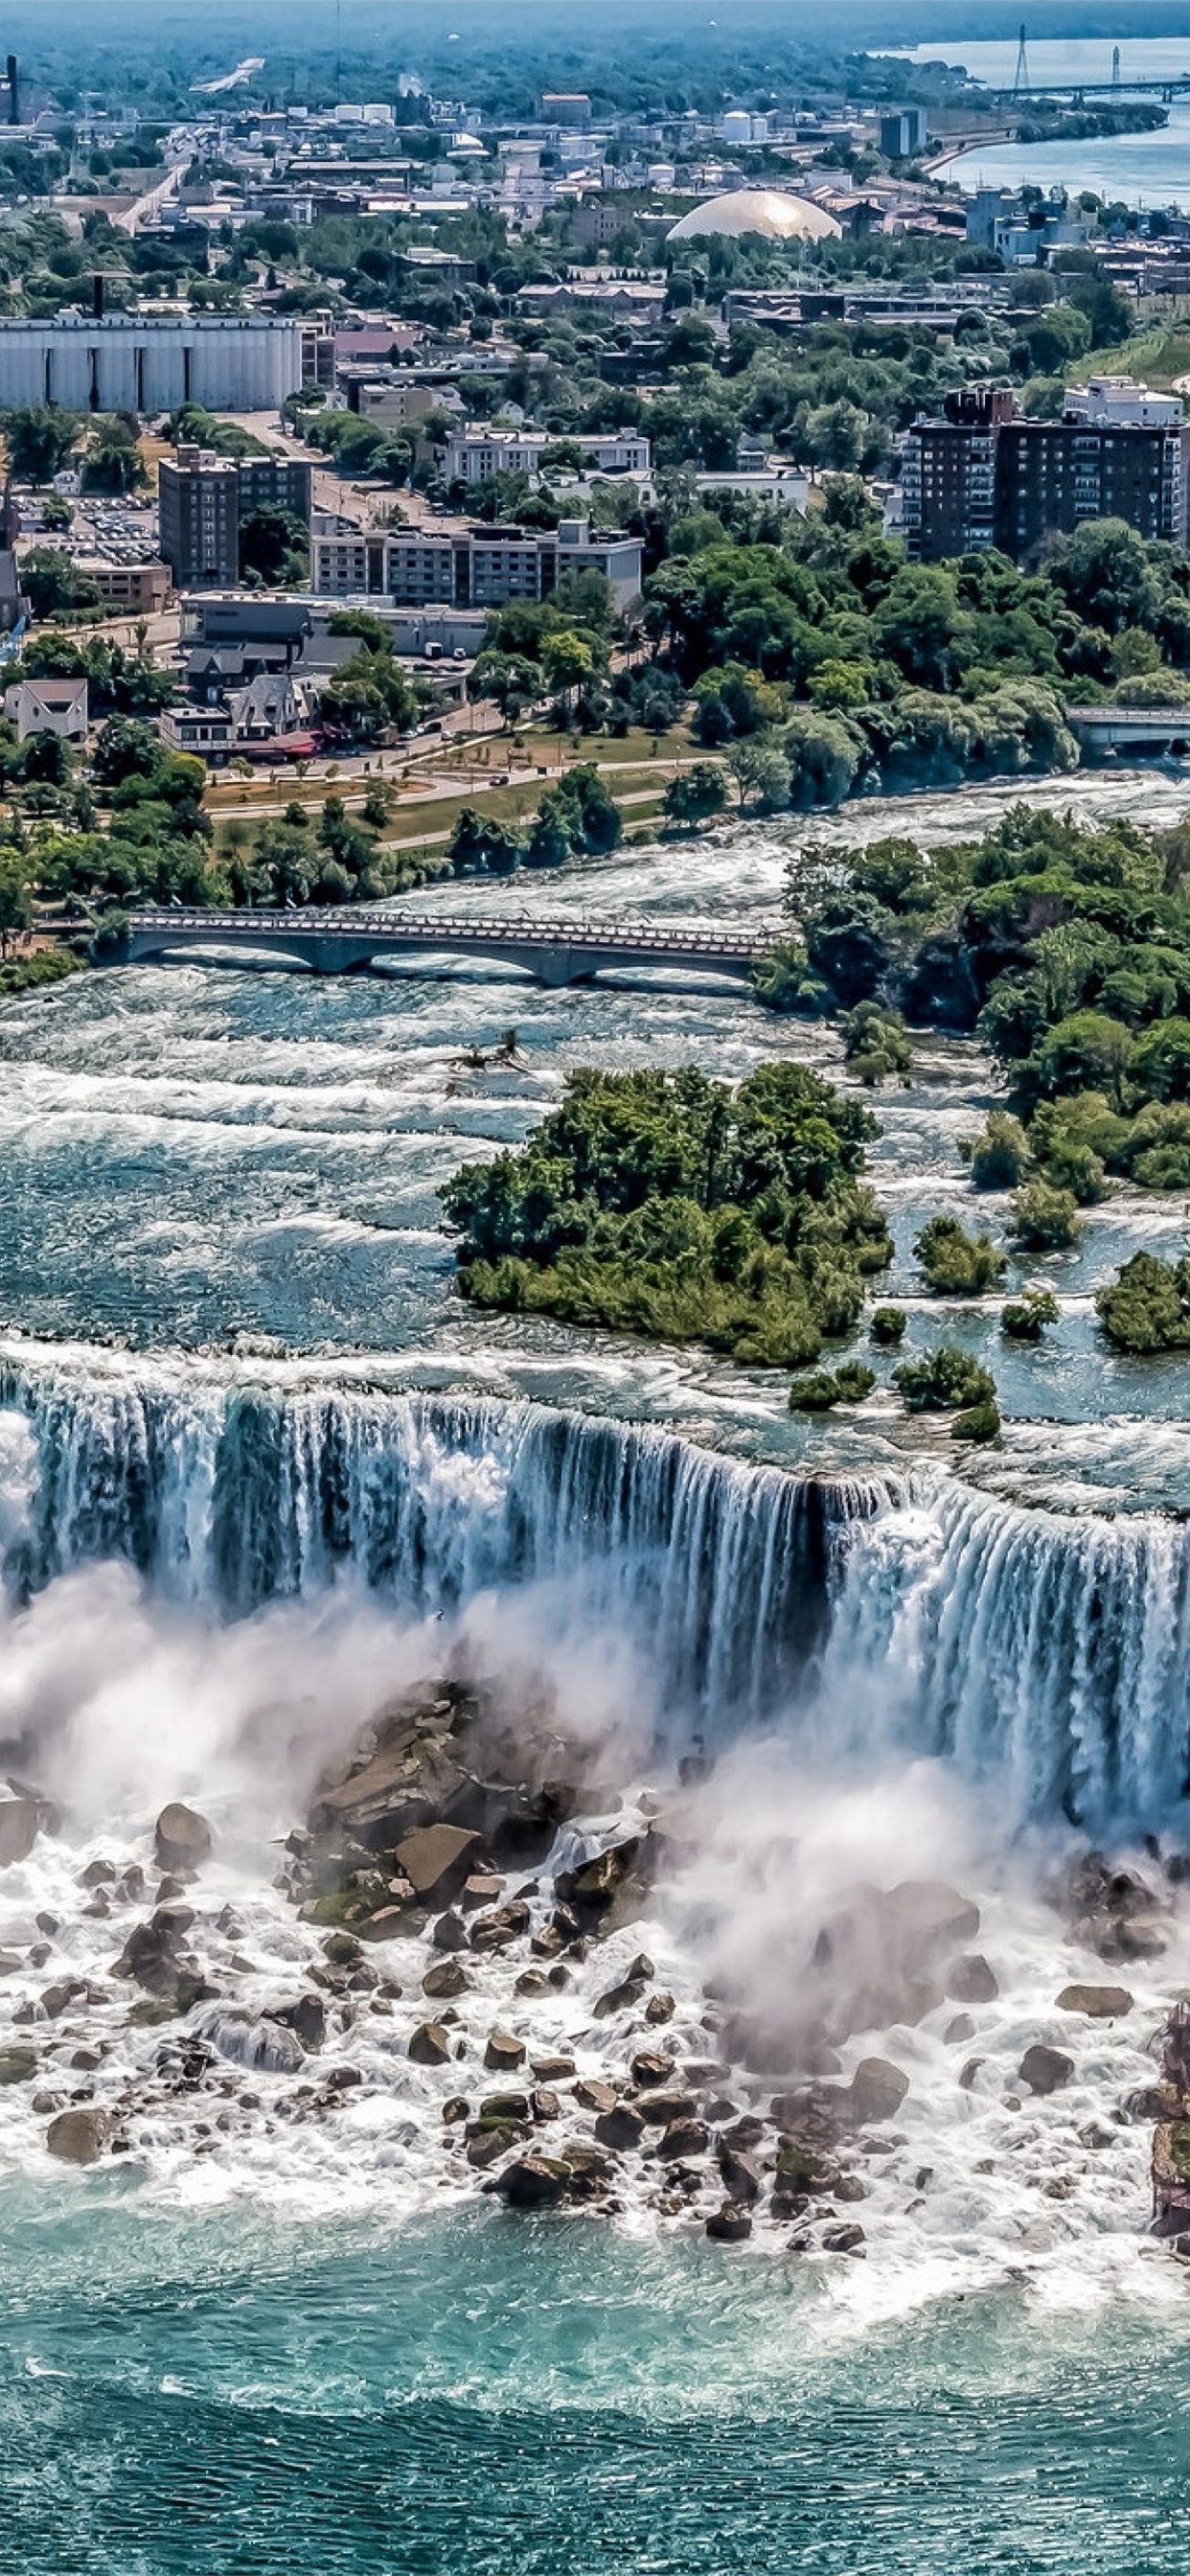 Cảnh Niagara Falls chắc chắn sẽ khiến bạn trầm trồ với vẻ đẹp thiên nhiên tuyệt diệu. Nhiều du khách đã từng lên đó đã phải ngỡ ngàng trước những dòng nước duyên dáng xen lẫn những cơn sương mù quyến rũ. Hãy xem hình ảnh để trải nghiệm và cảm nhận sức mạnh của cảnh quan đầy ấn tượng này. 